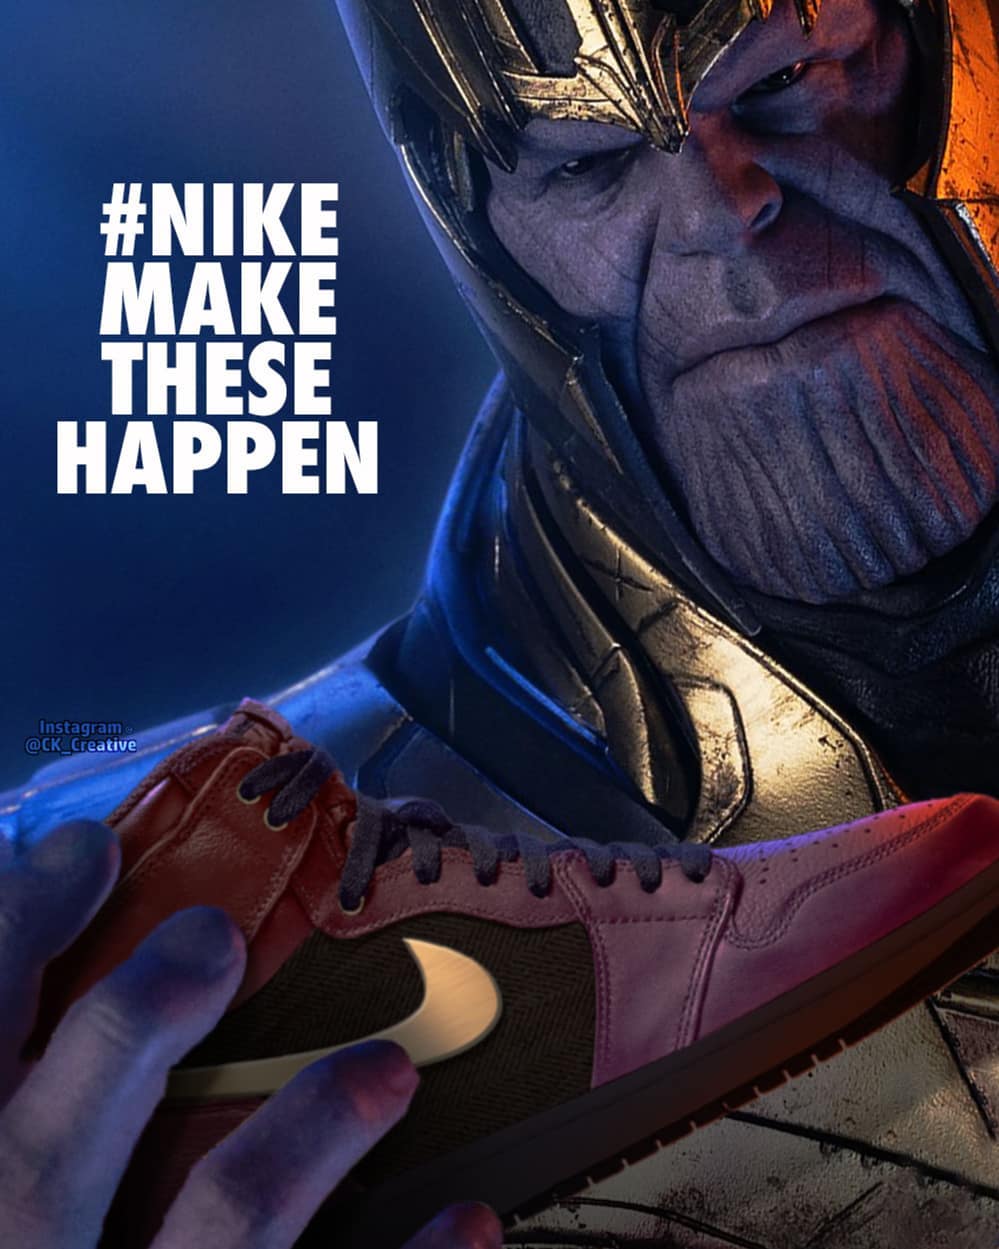 10 Desain sepatu Nike Jordan edisi Avengers: Endgame ini kece abis